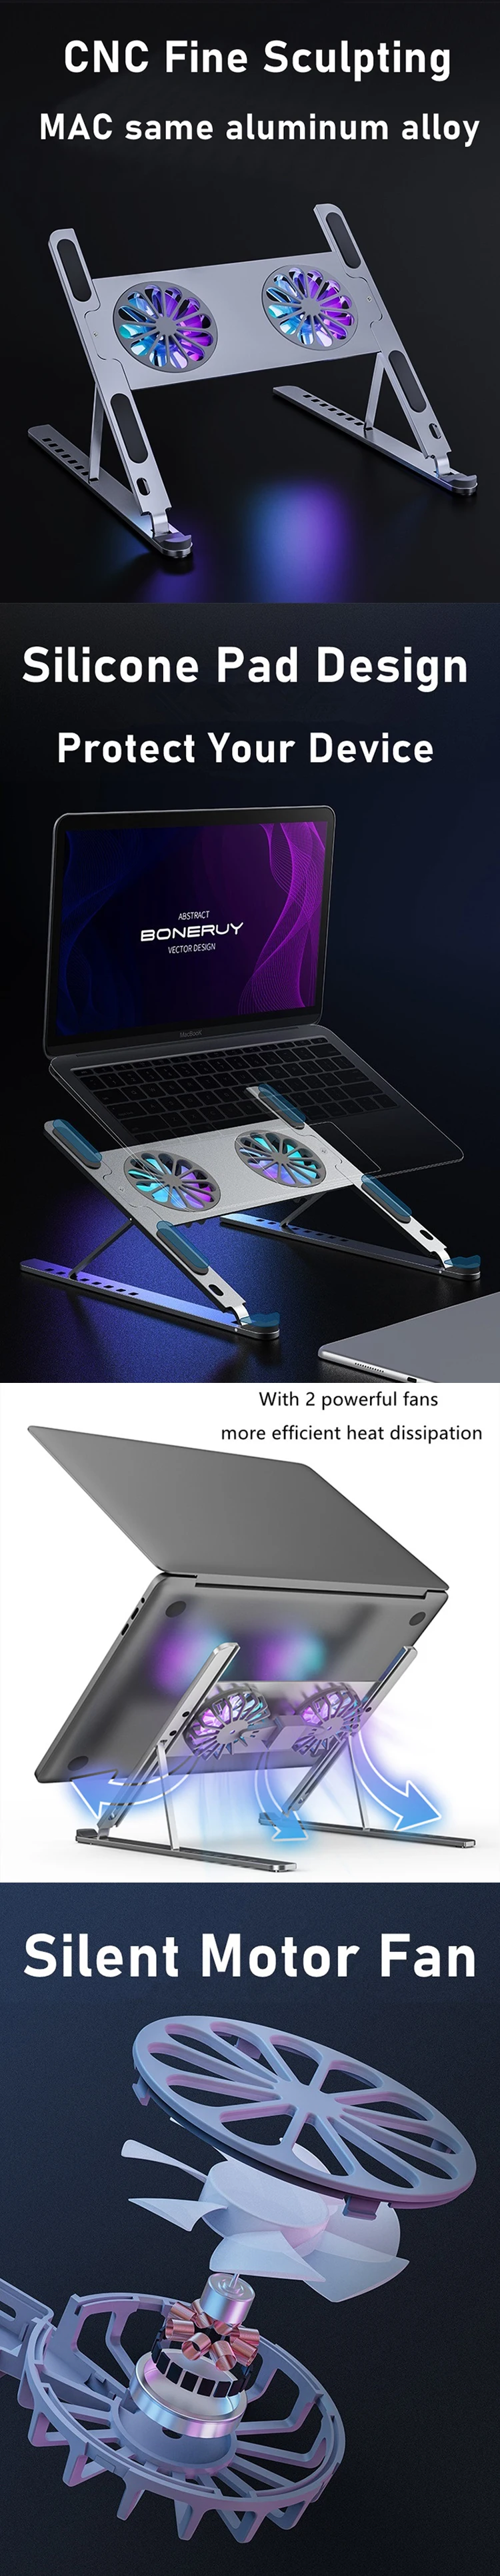 Aluminum Foldable Adjustable Cooler 2 Fans Cooling Desk Notebook Laptop Stand Bracket Holder for Macbook Pro Computer